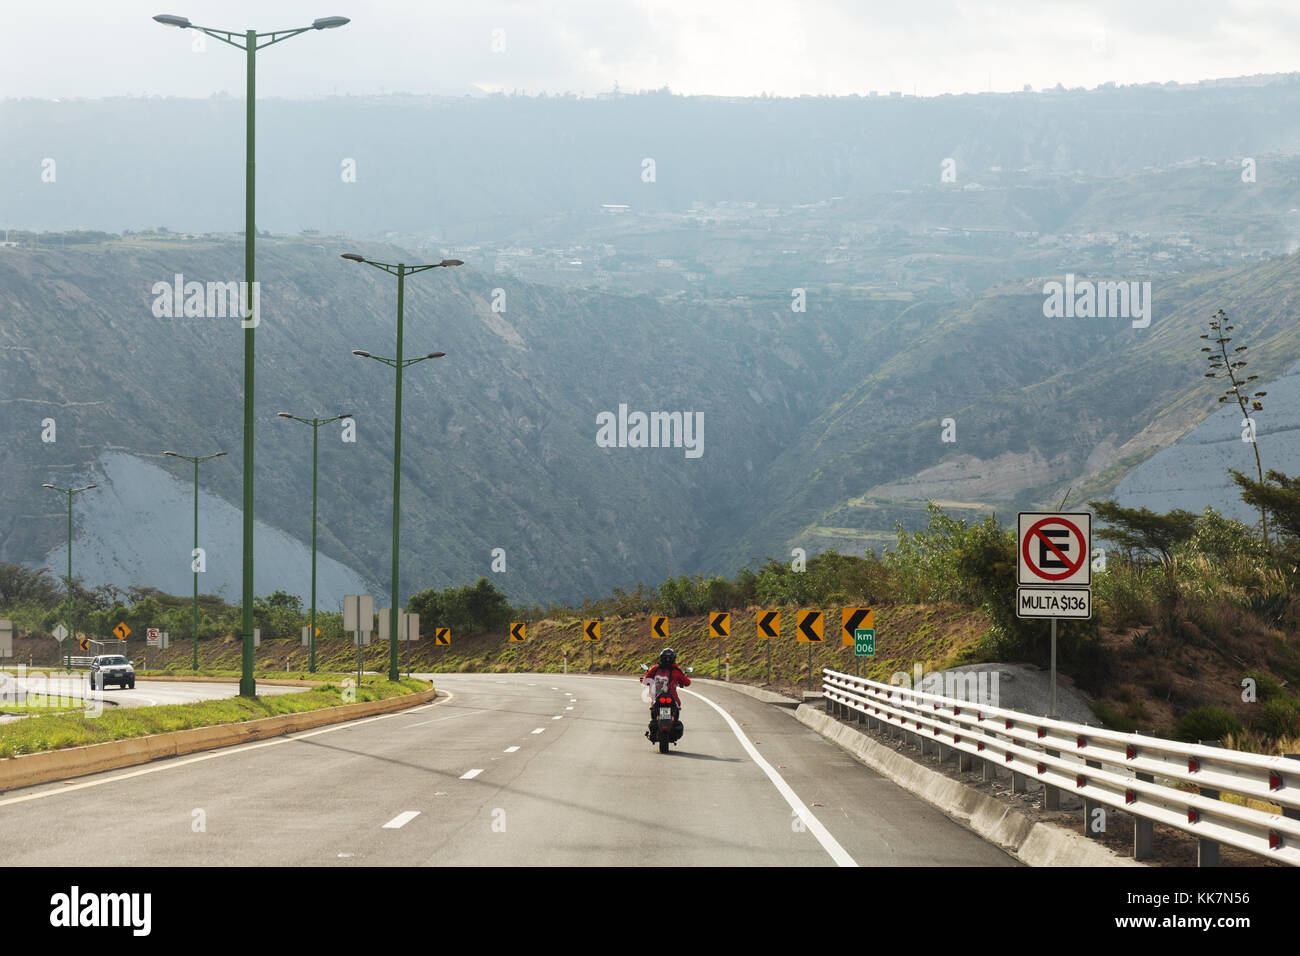 Equateur - moto motard et une motocyclette sur la route Panaméricaine, Equateur, Amérique du Sud Banque D'Images